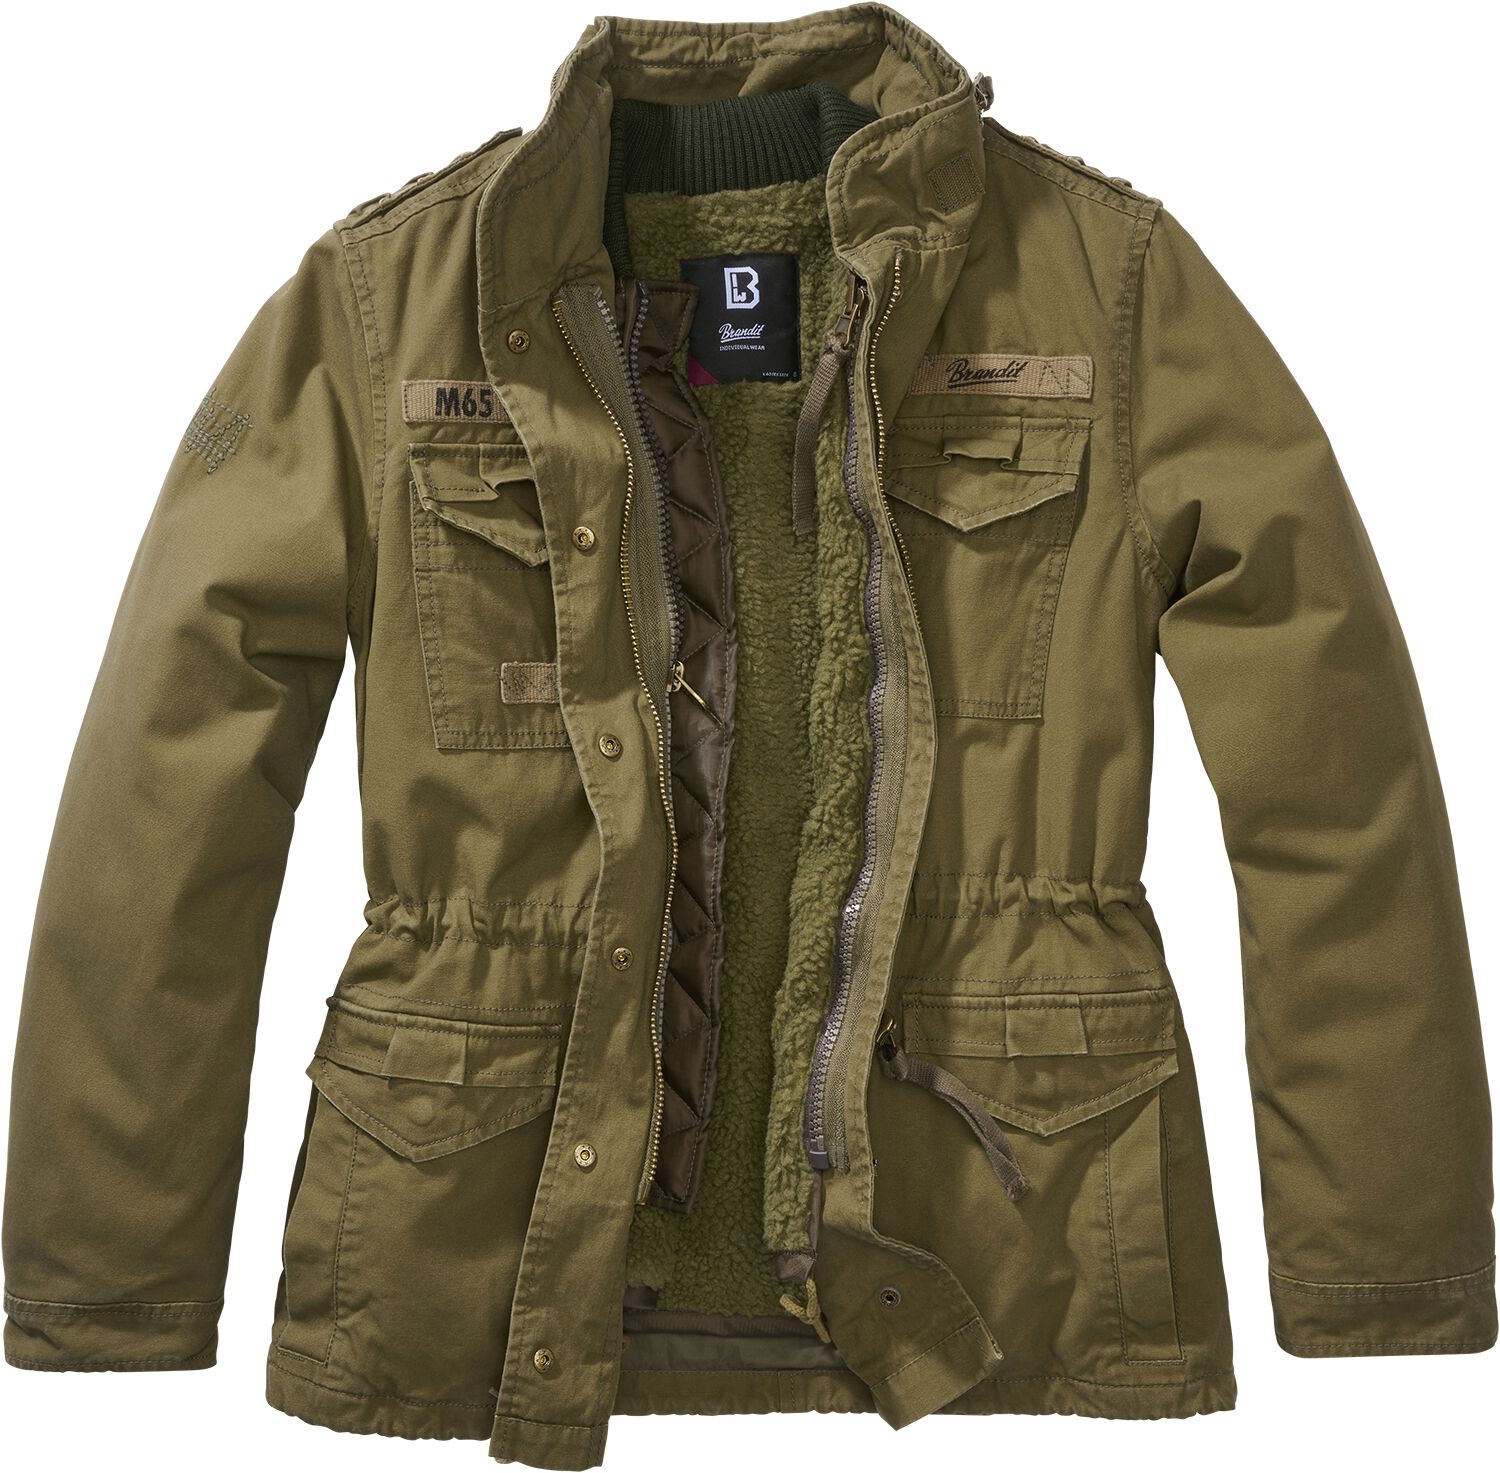 Brandit Winterjacke - Ladies M65 Giant Jacket - XS bis 5XL - für Damen - Größe 5XL - oliv